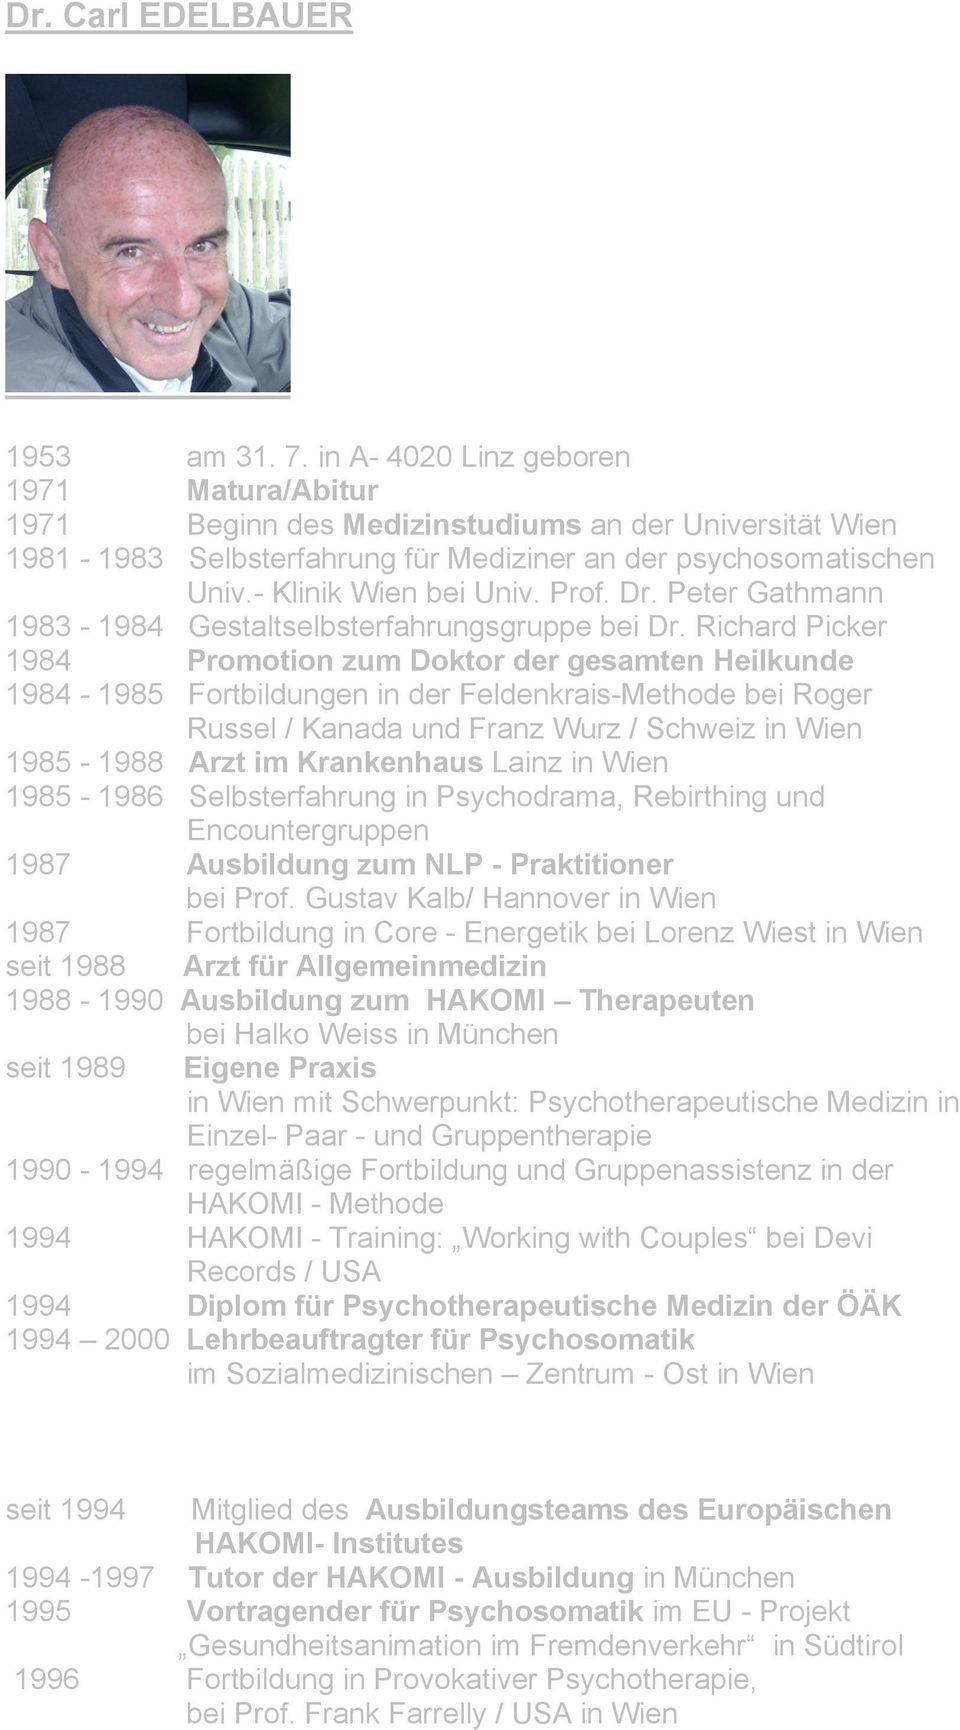 Dr. Peter Gathmann 1983-1984 Gestaltselbsterfahrungsgruppe bei Dr.